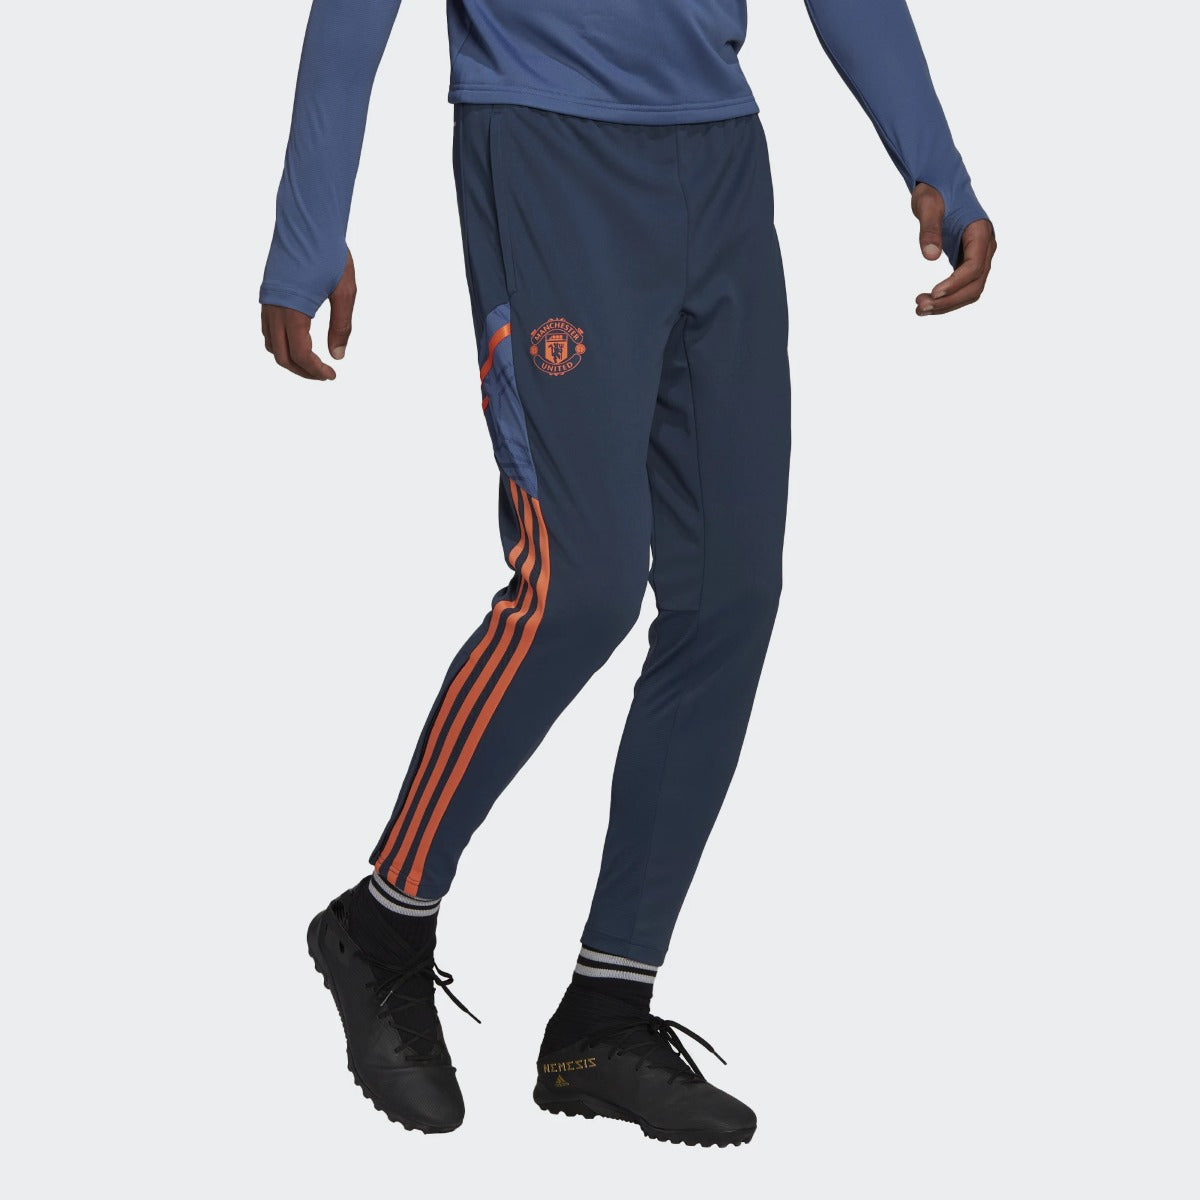 Pantaloni allenamento Manchester United Condivo 2022/2023 - Blu/Arancione